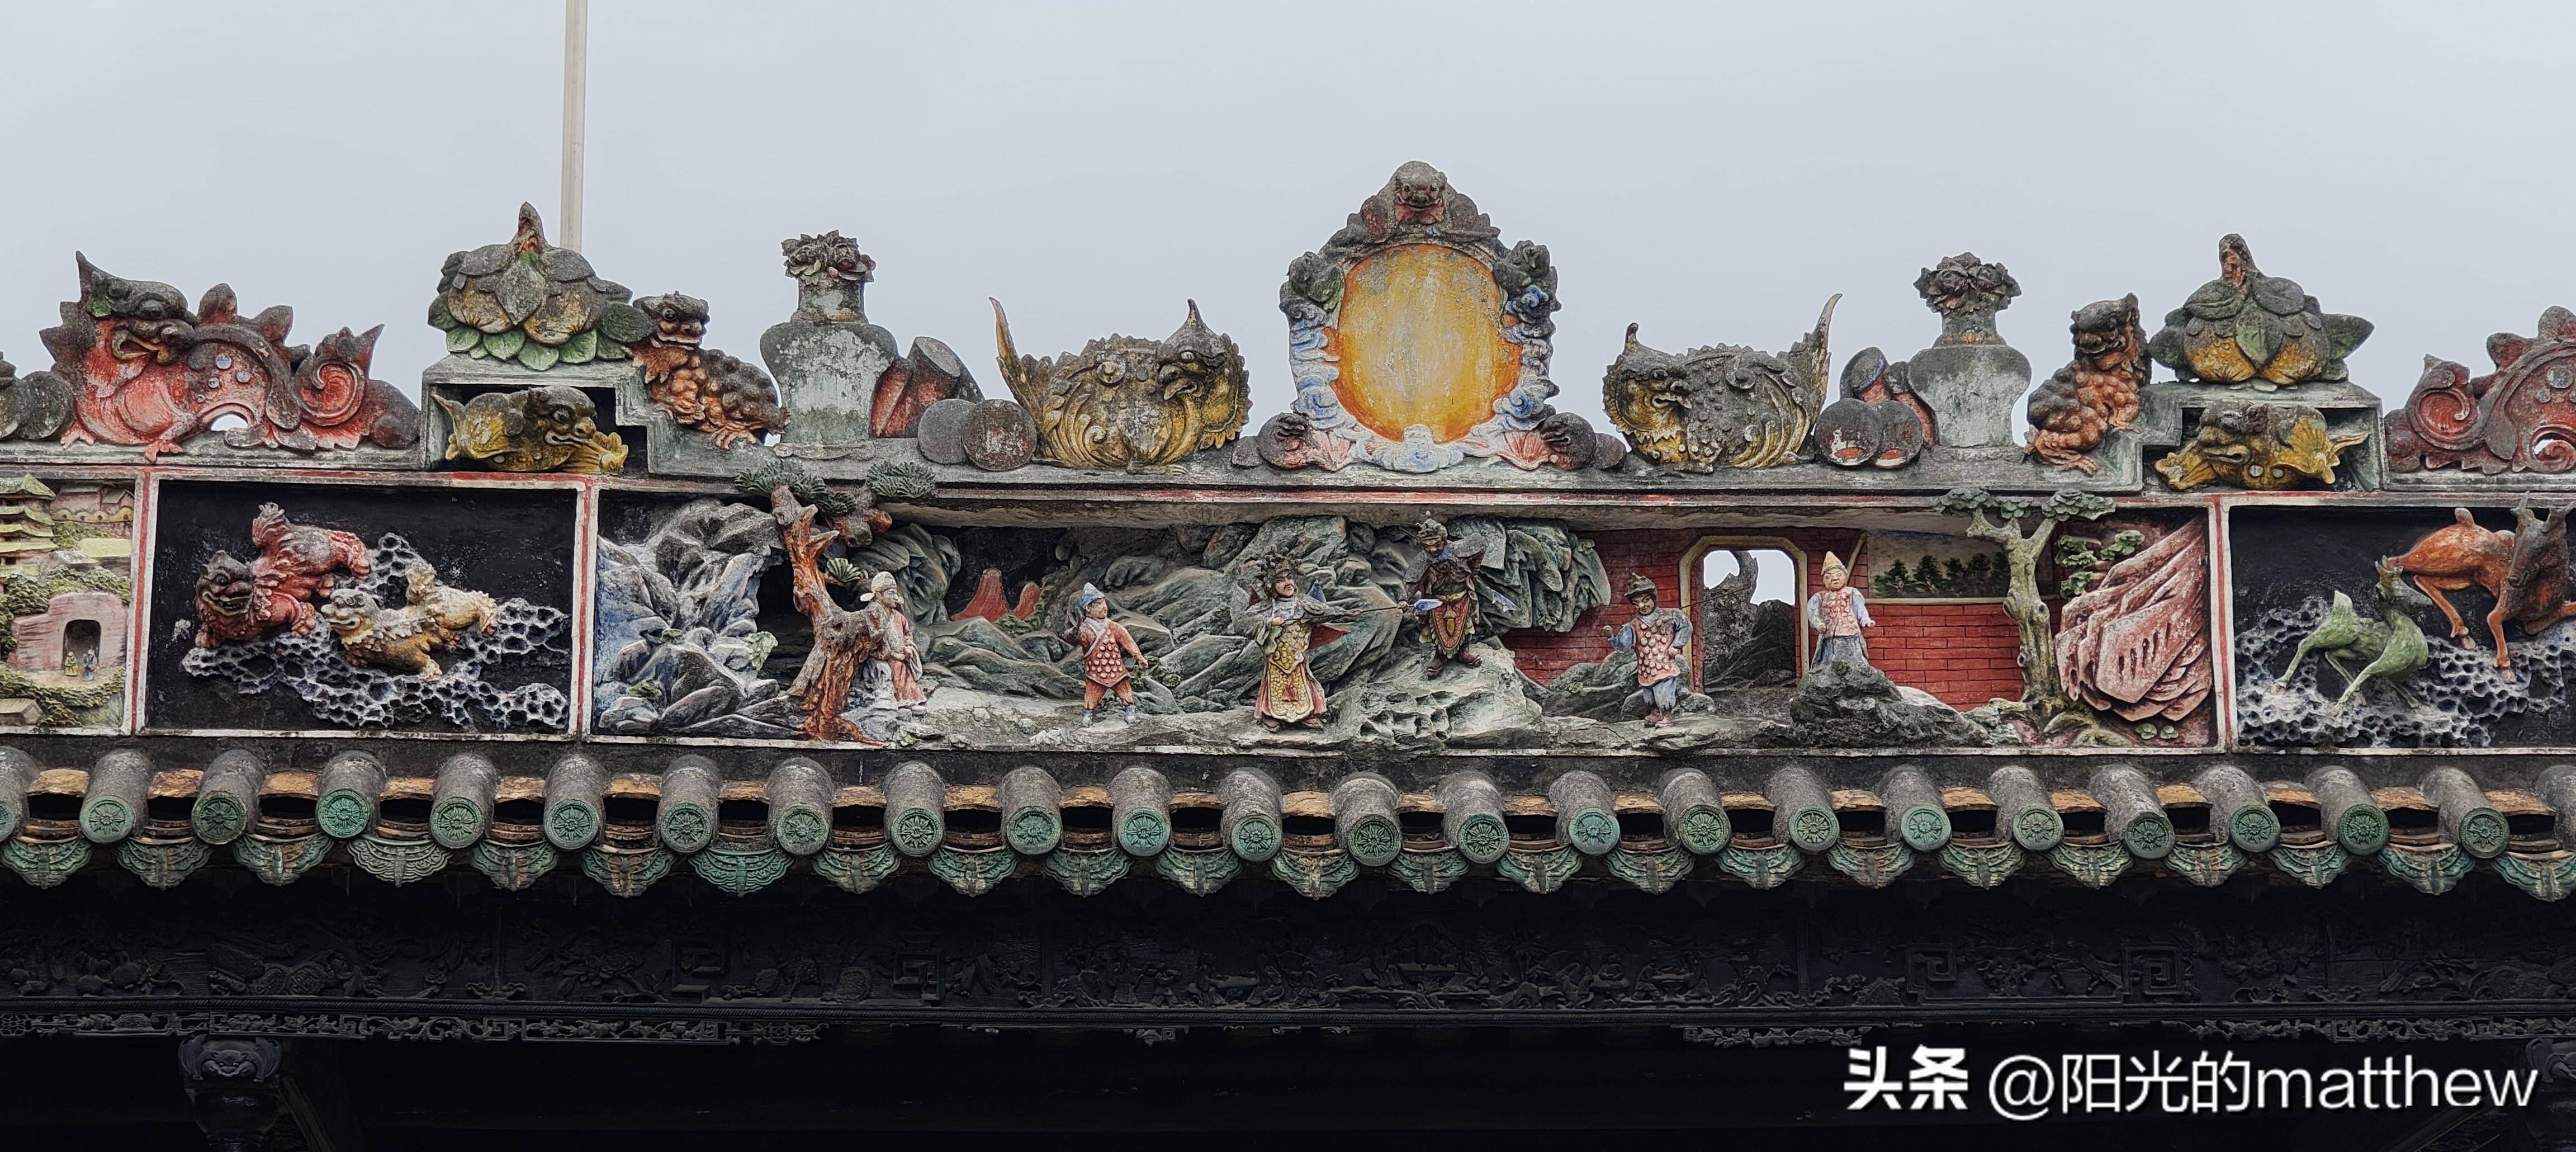 陈家祠堂不仅是广州市著名的文化旅游景点,也是全国重点文物保护单位